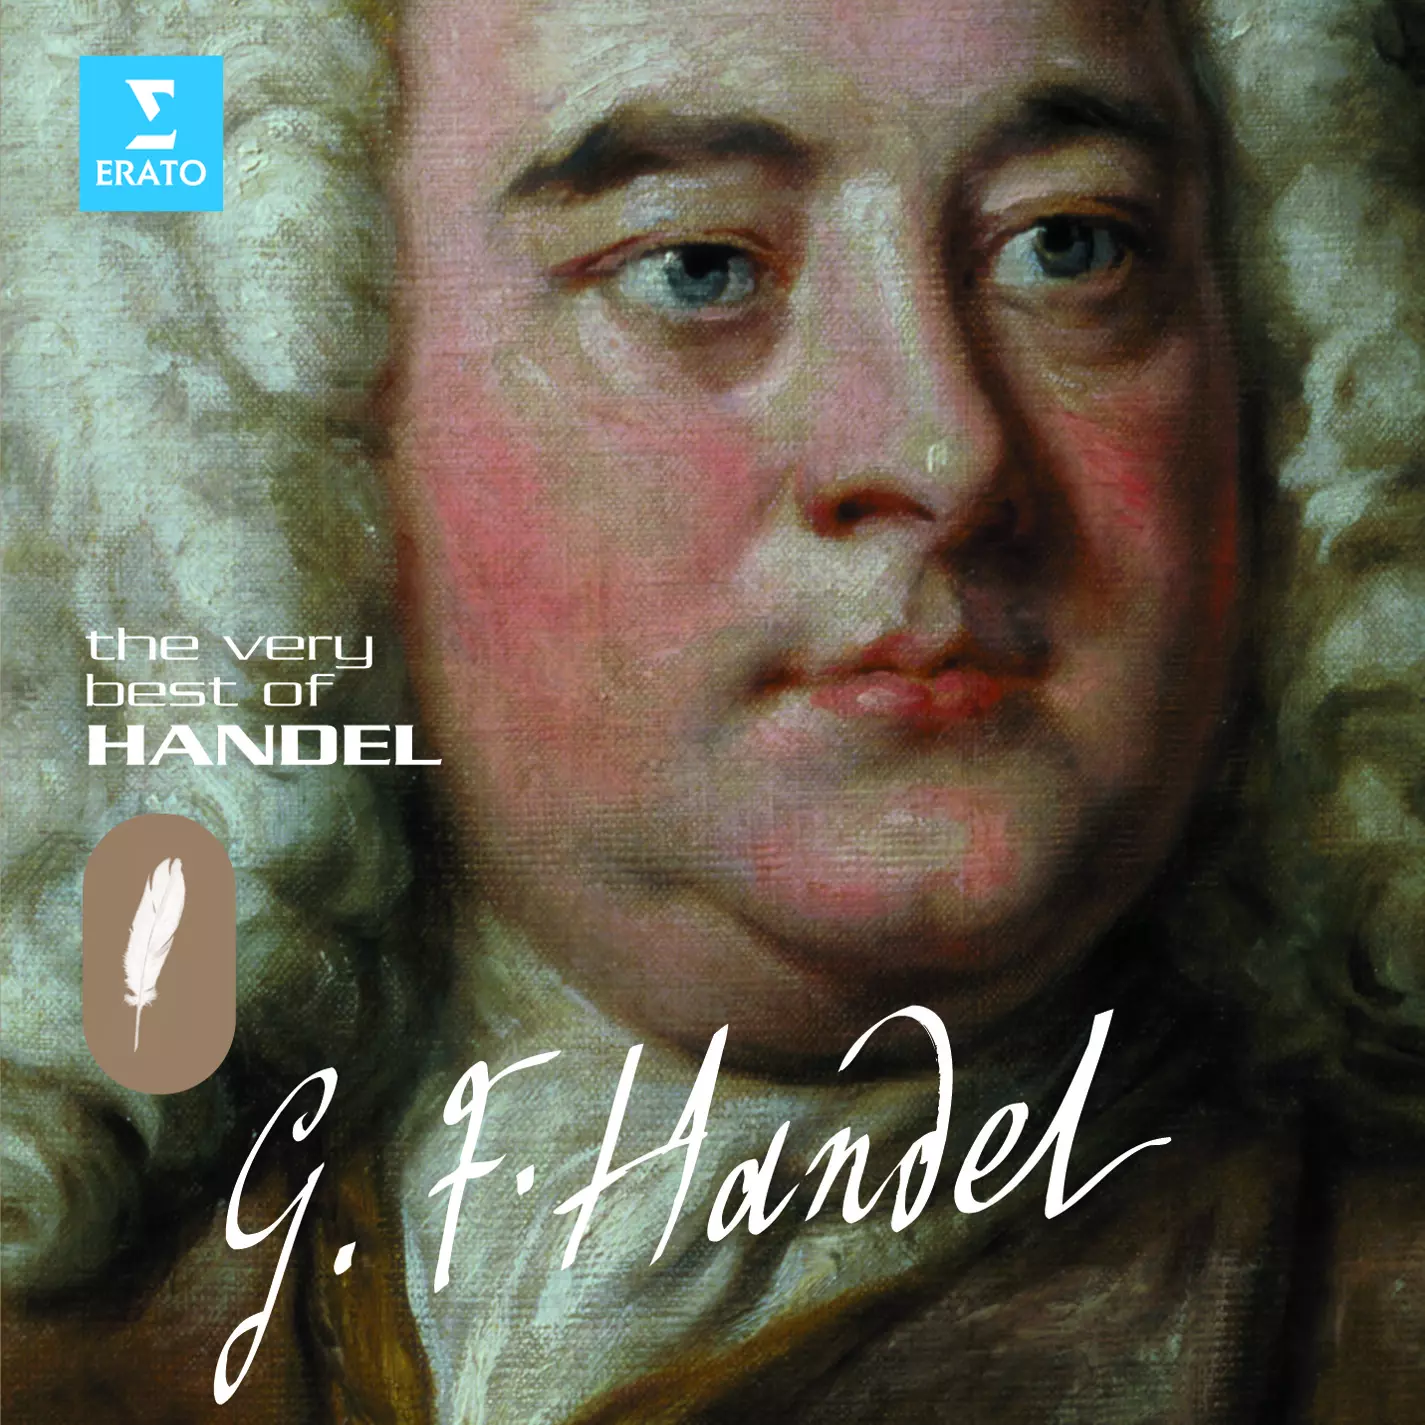 The Very Best Of Handel